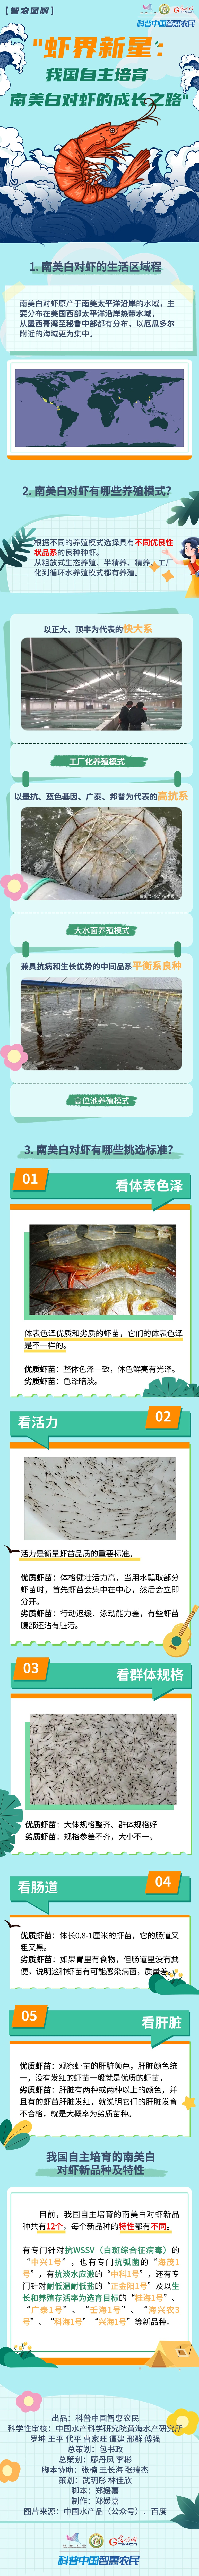 【智农图解】虾界新星：我国自主培育南美白对虾的成长之路